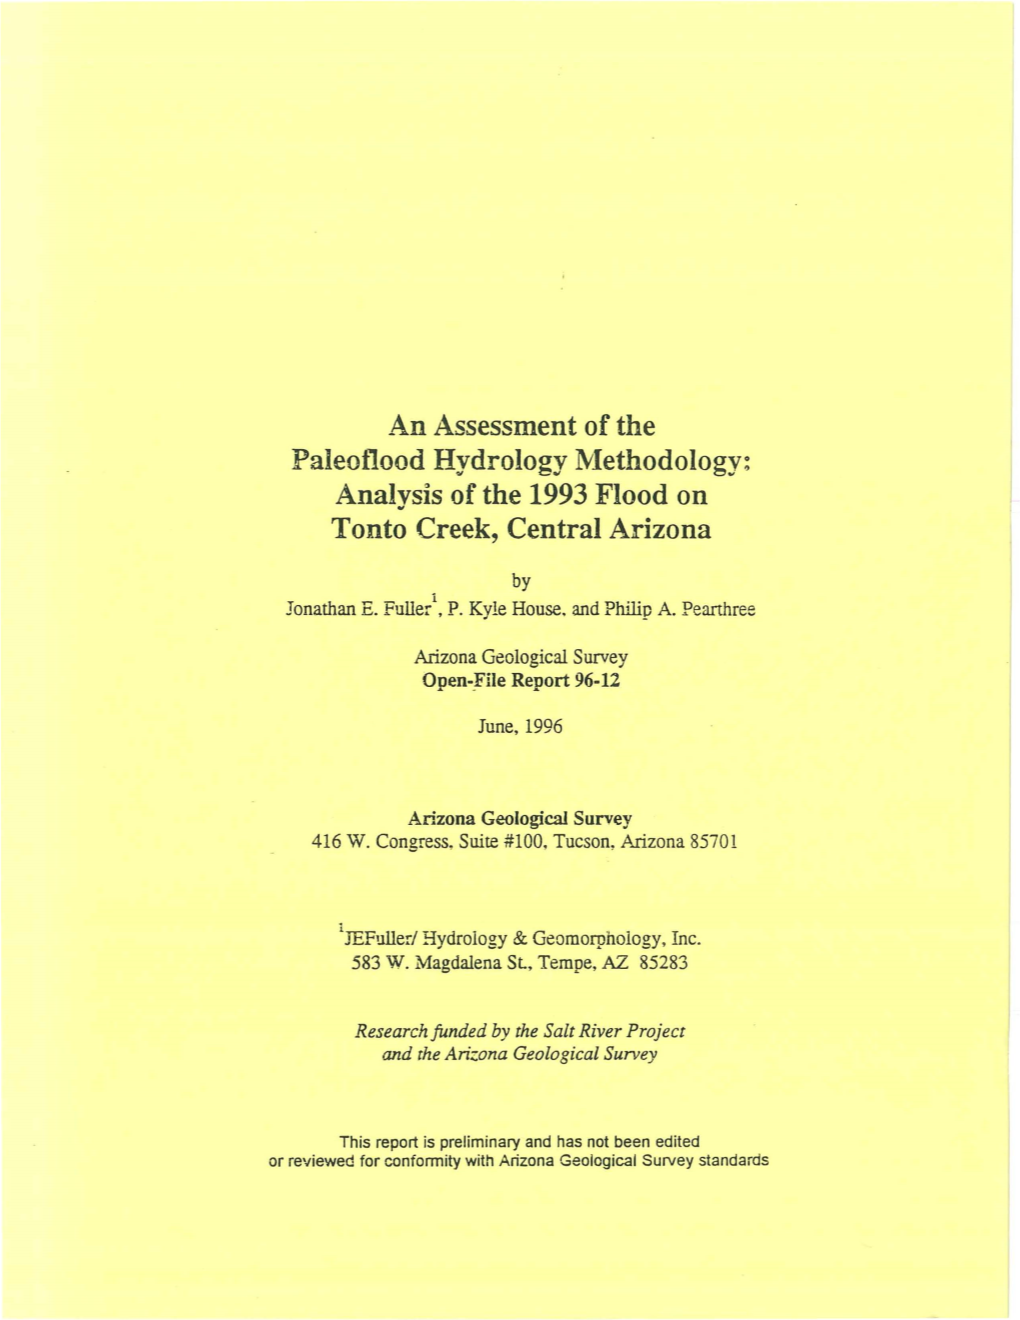 Analysis of the 1993 Flood on Tonto Creek, Central Arizona